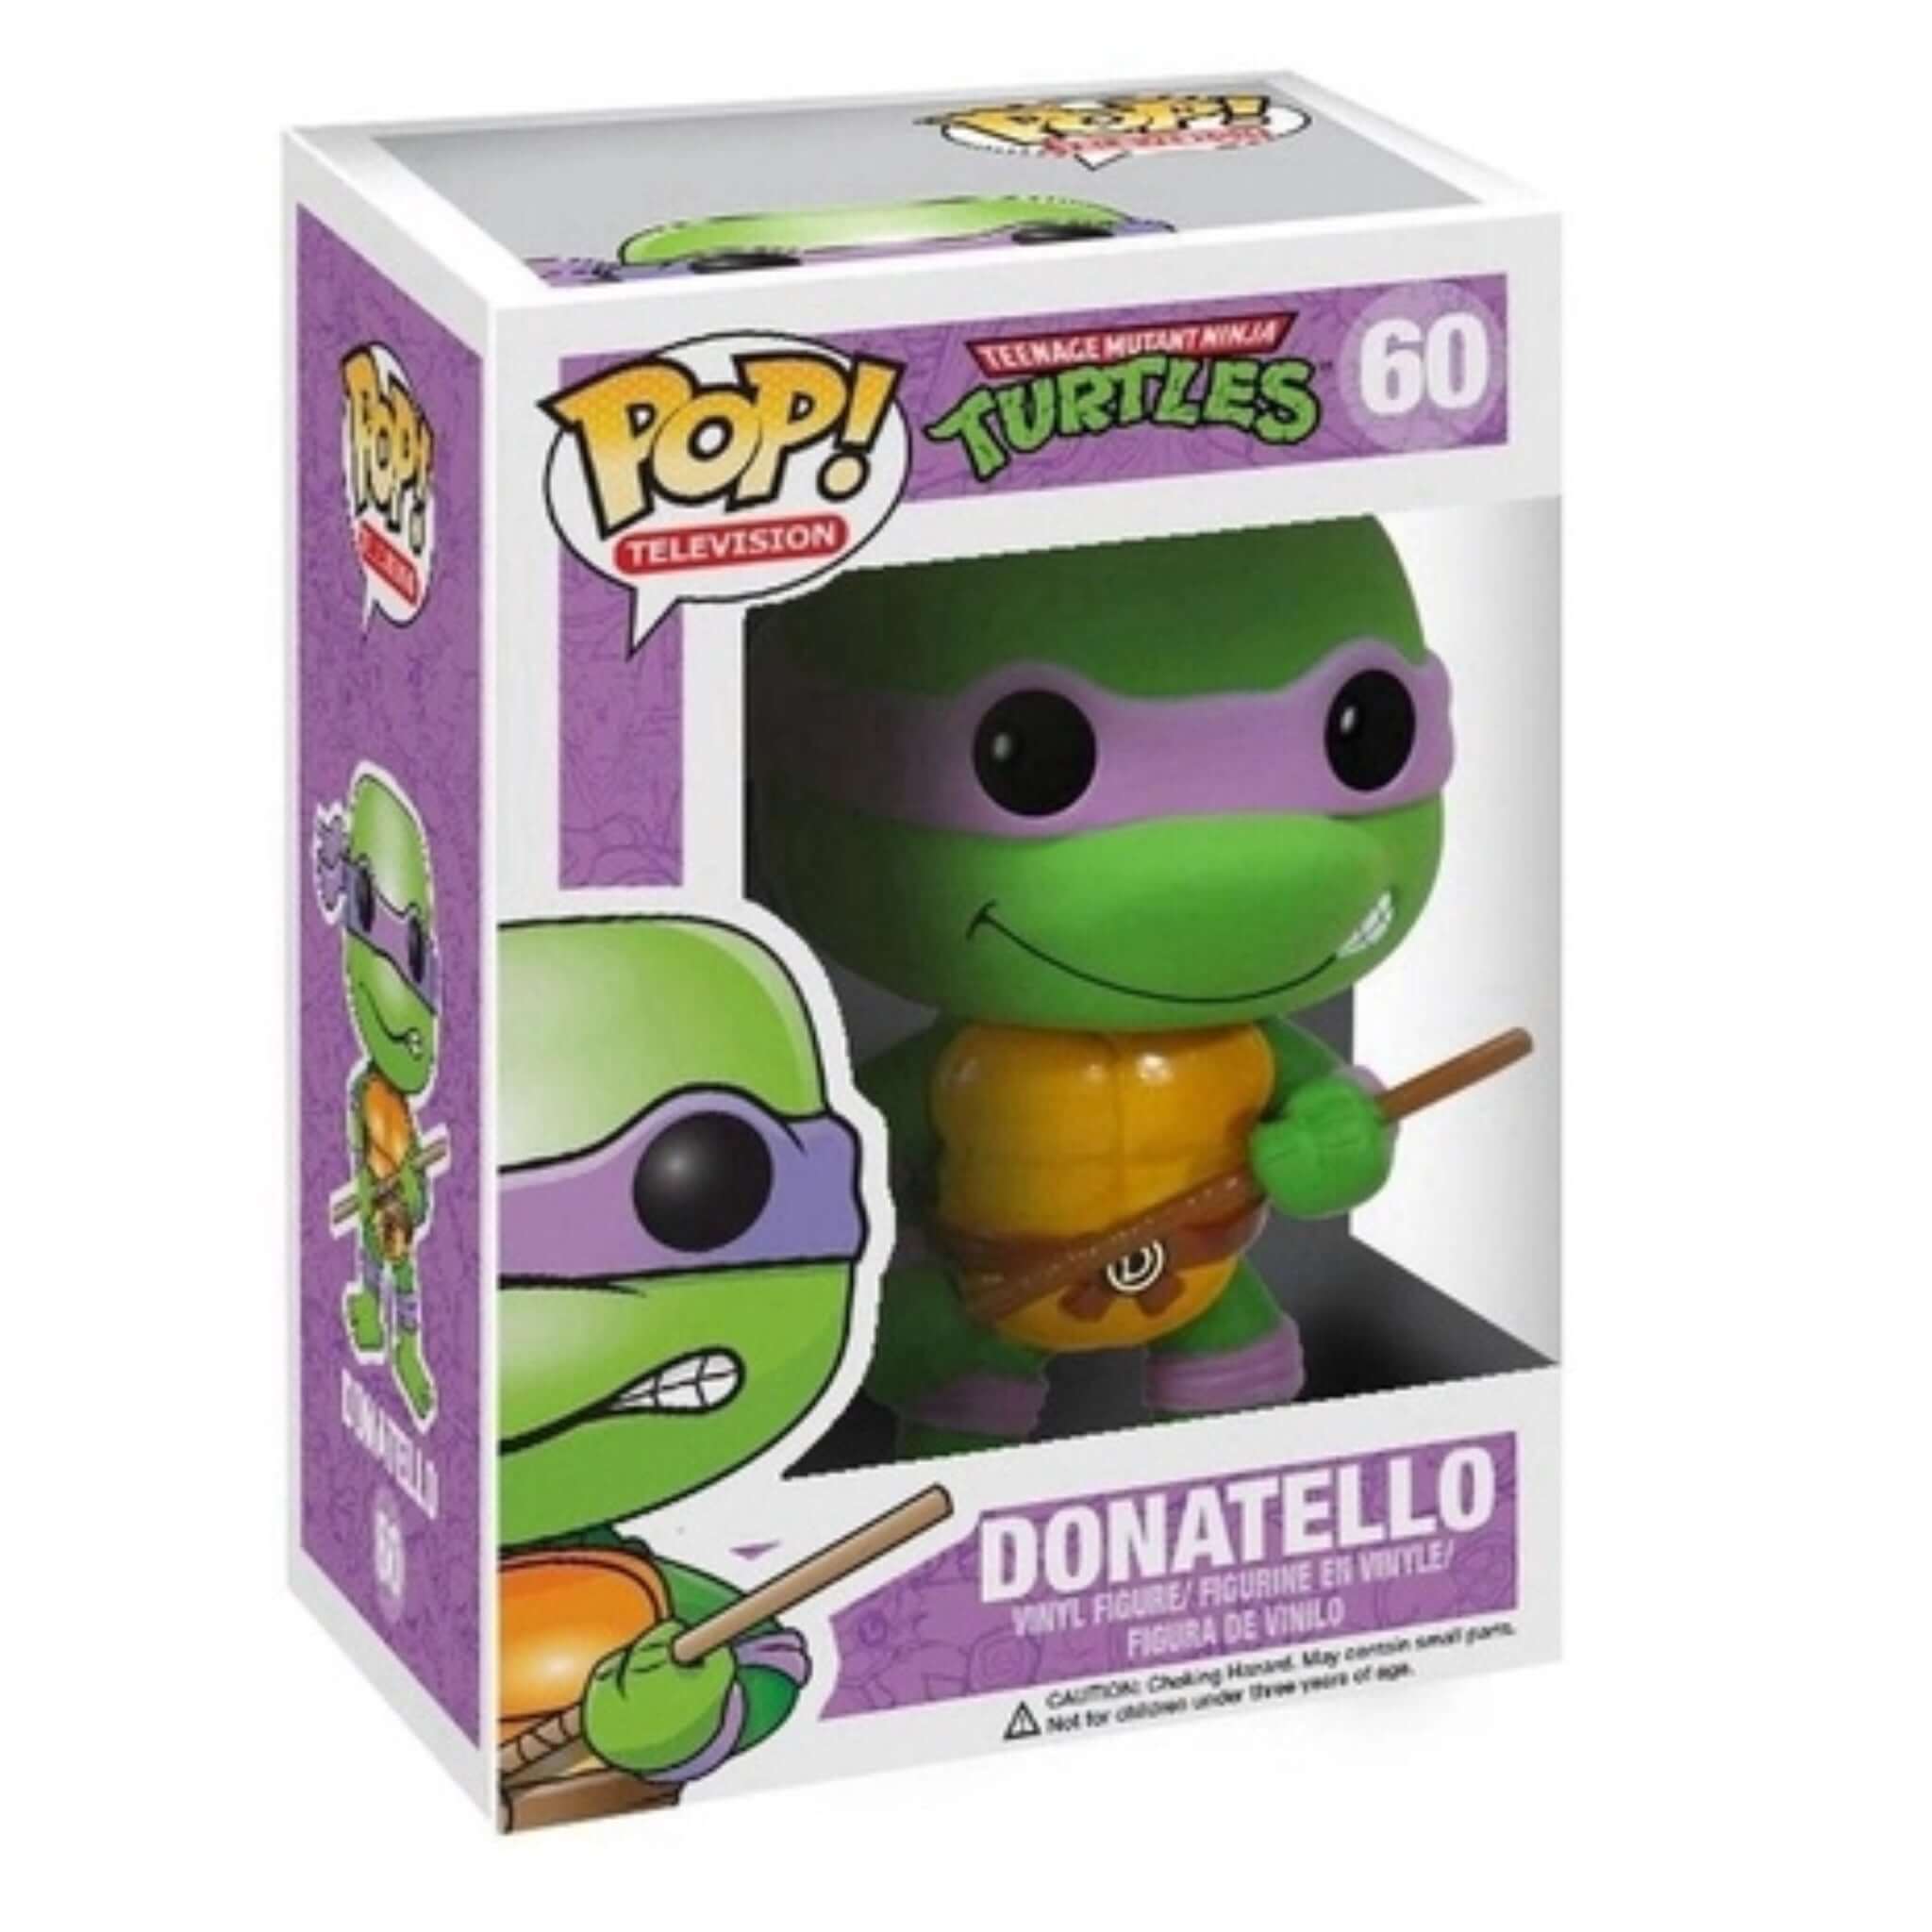 Donatello Funko Pop!-Jingle Truck Toys